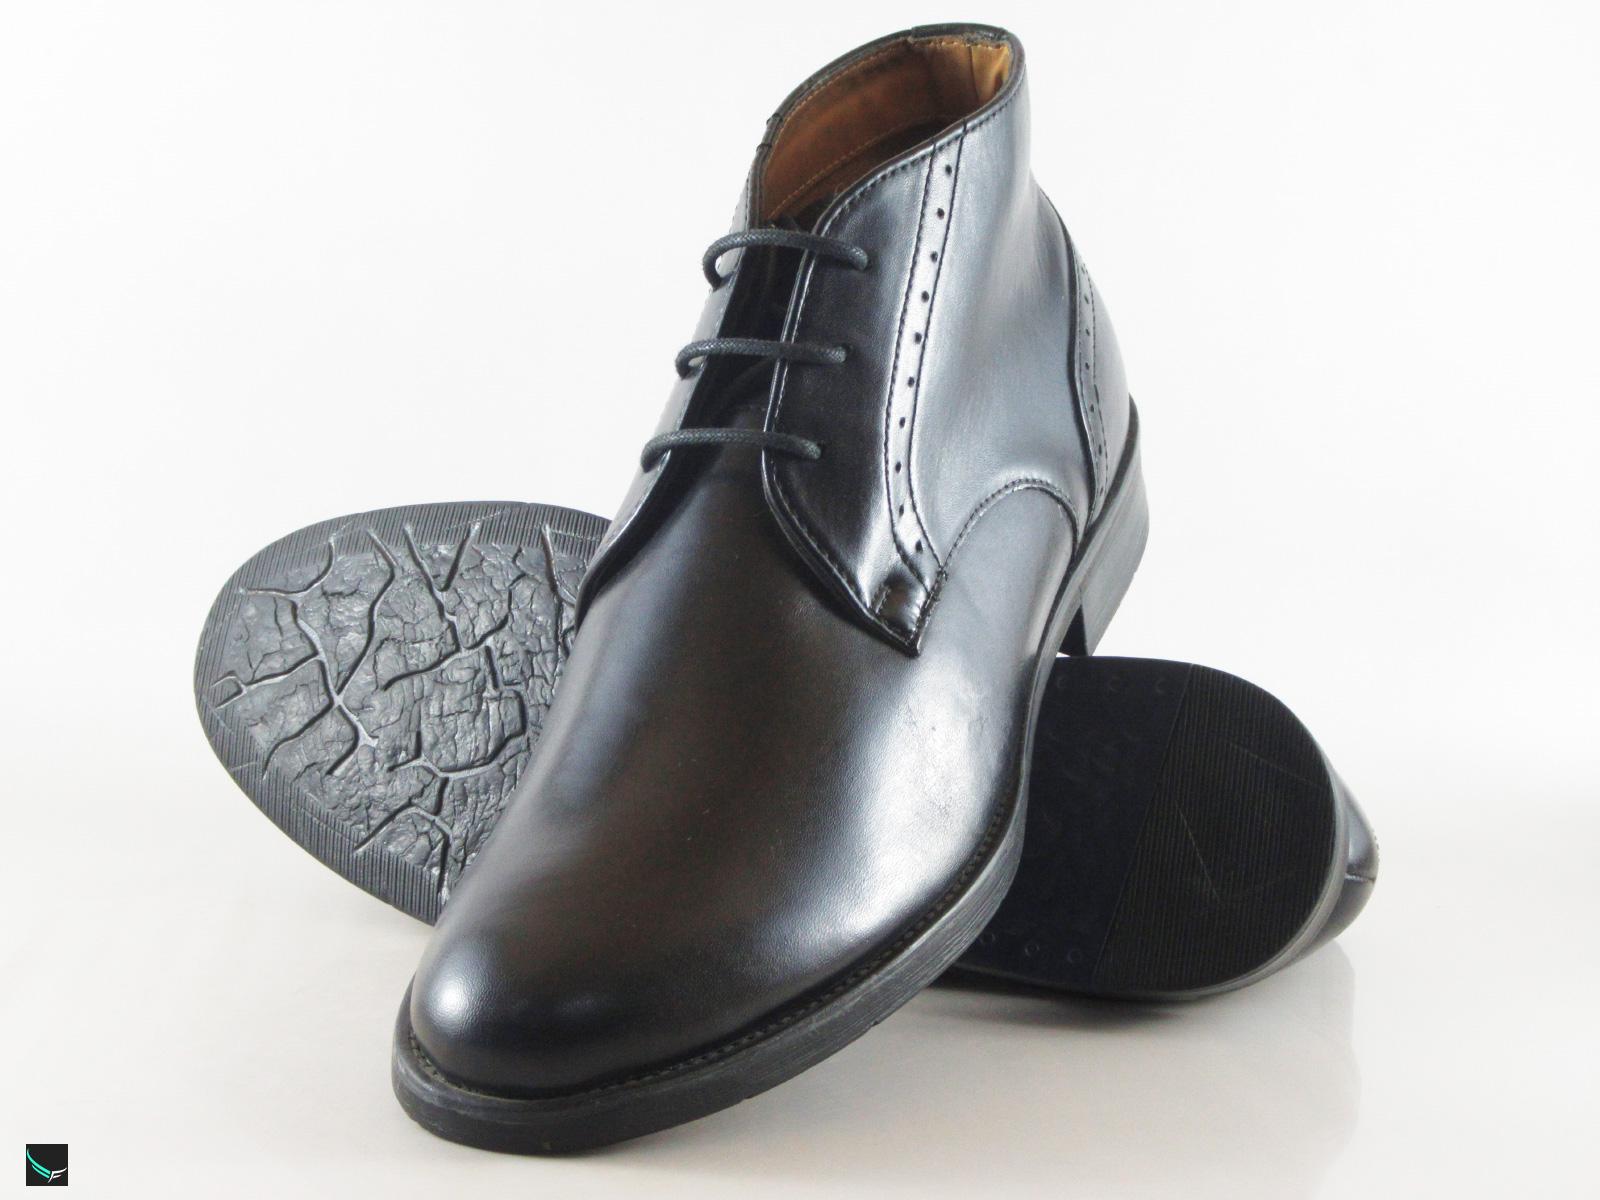 leather shoes stylish